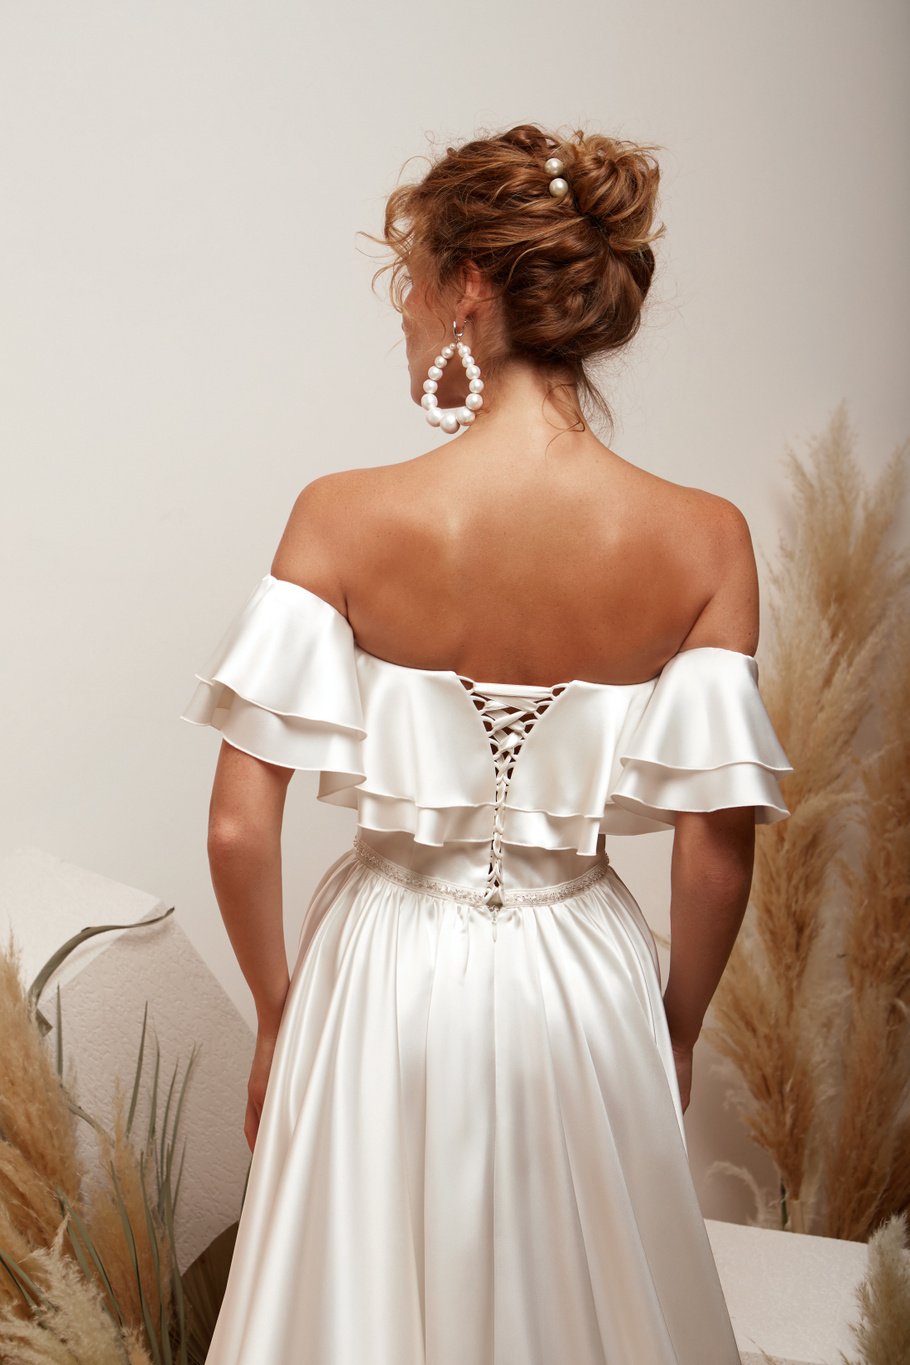 Купить свадебное платье «Магнолия» Мэрри Марк из коллекции 2020 года в Екатеринбурге